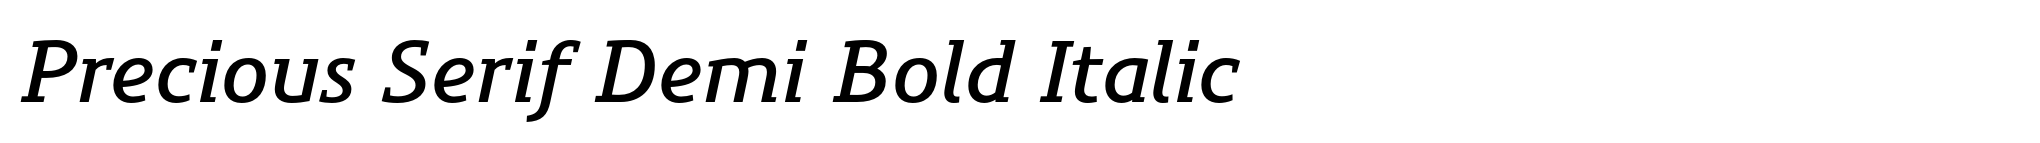 Precious Serif Demi Bold Italic image